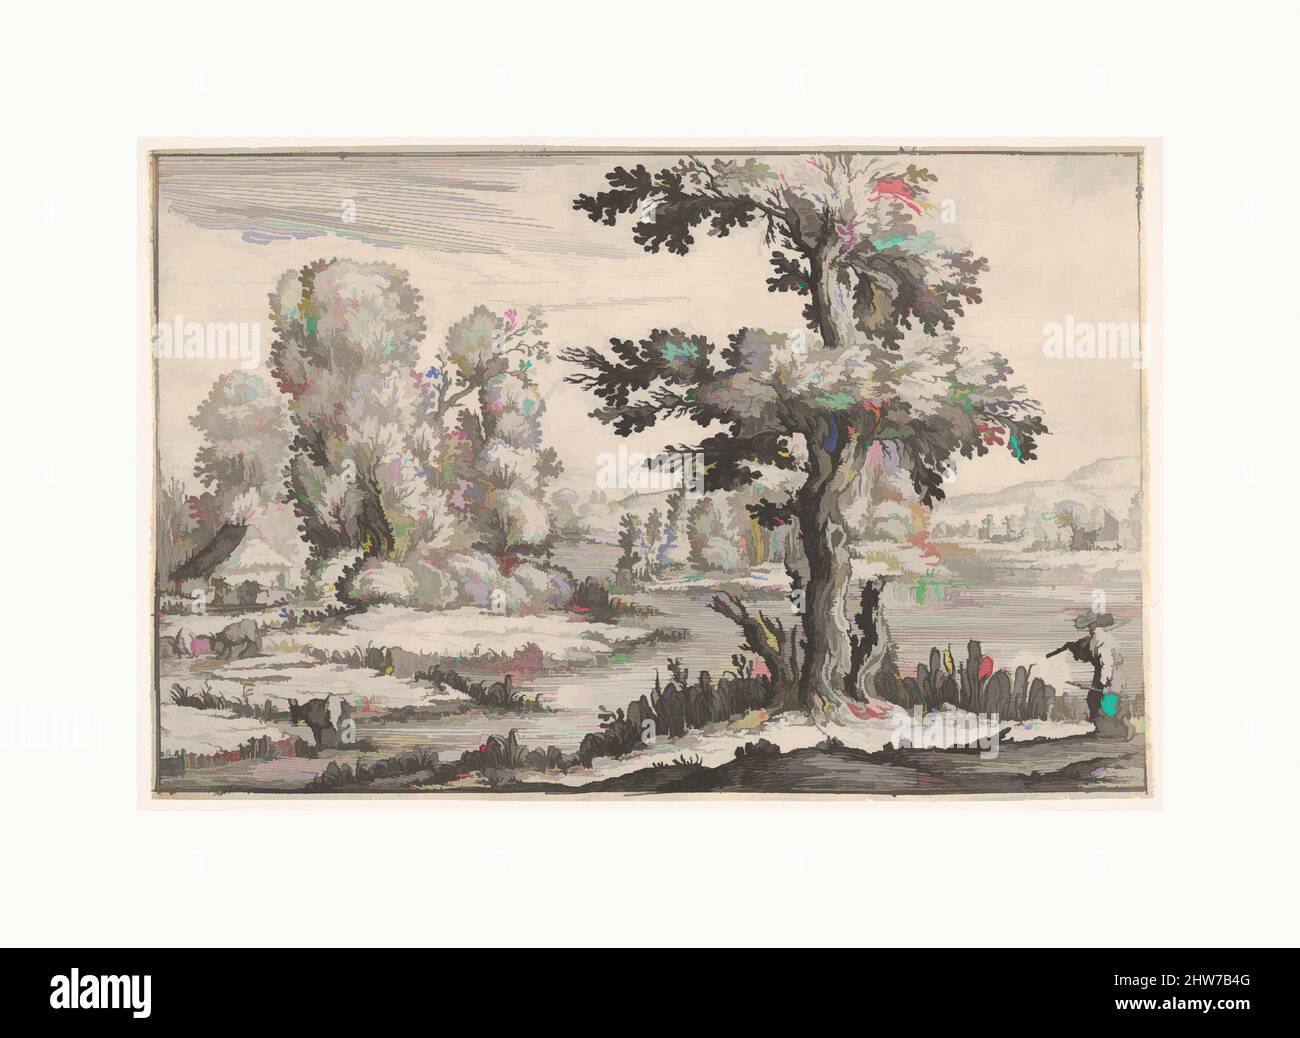 Kunst inspiriert von der Landschaft mit Ziegen, die in der Nähe eines Flusses grasen, und einer Figur im rechten Vordergrund, aus einer Serie von Landschaften, die dem Großherzog der Toskana gewidmet sind, 1638, Radierung, Blatt: 6 3/8 × 9 3/4 in. (16,2 × 24,8 cm), Drucke, Ercole Bazicaluva (italienisch, geboren Pisa (?), ca. 1600, Classic Works modernisiert von Artotop mit einem Schuss Moderne. Formen, Farbe und Wert, auffällige visuelle Wirkung auf Kunst. Emotionen durch Freiheit von Kunstwerken auf zeitgemäße Weise. Eine zeitlose Botschaft, die eine wild kreative neue Richtung verfolgt. Künstler, die sich dem digitalen Medium zuwenden und die Artotop NFT erschaffen Stockfoto